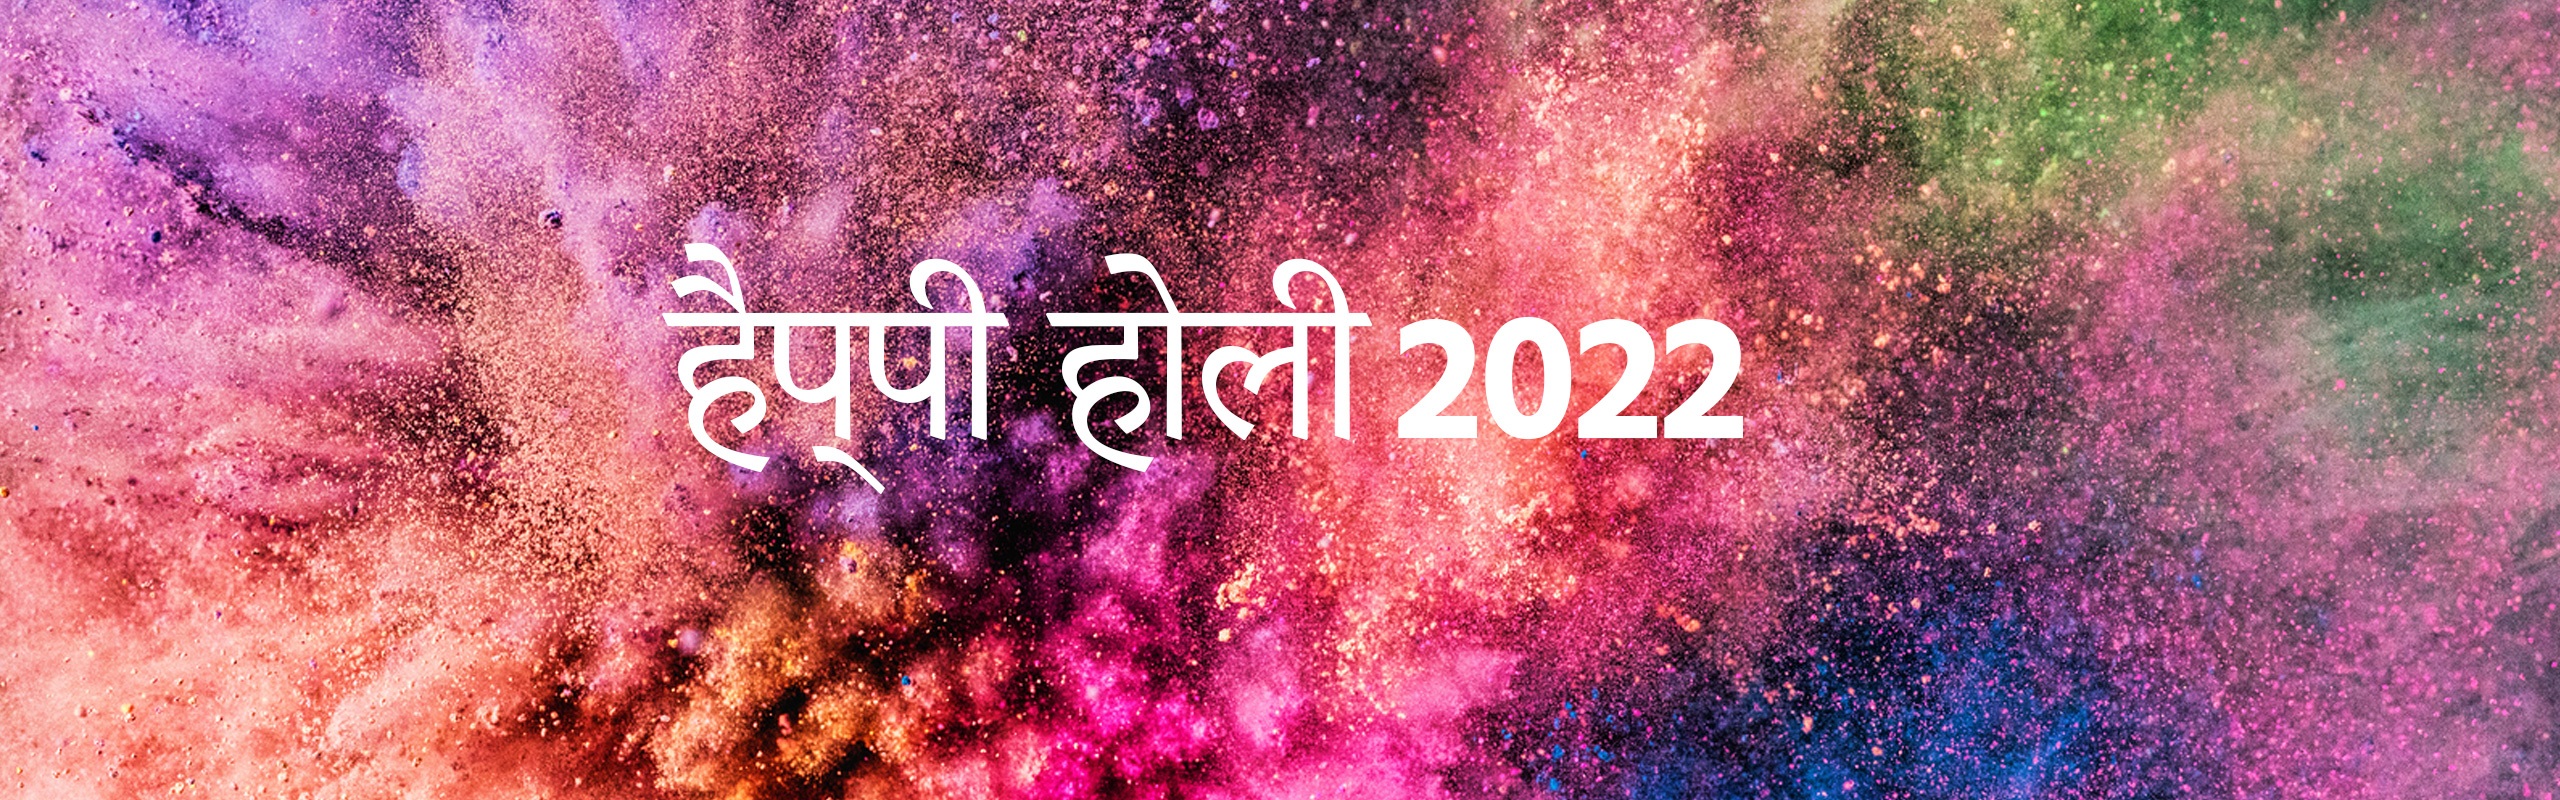 Holi Kab Hai 2022 (होली कब है 2022), 18 मार्च 2022, होलिका दहन का मुहूर्त 